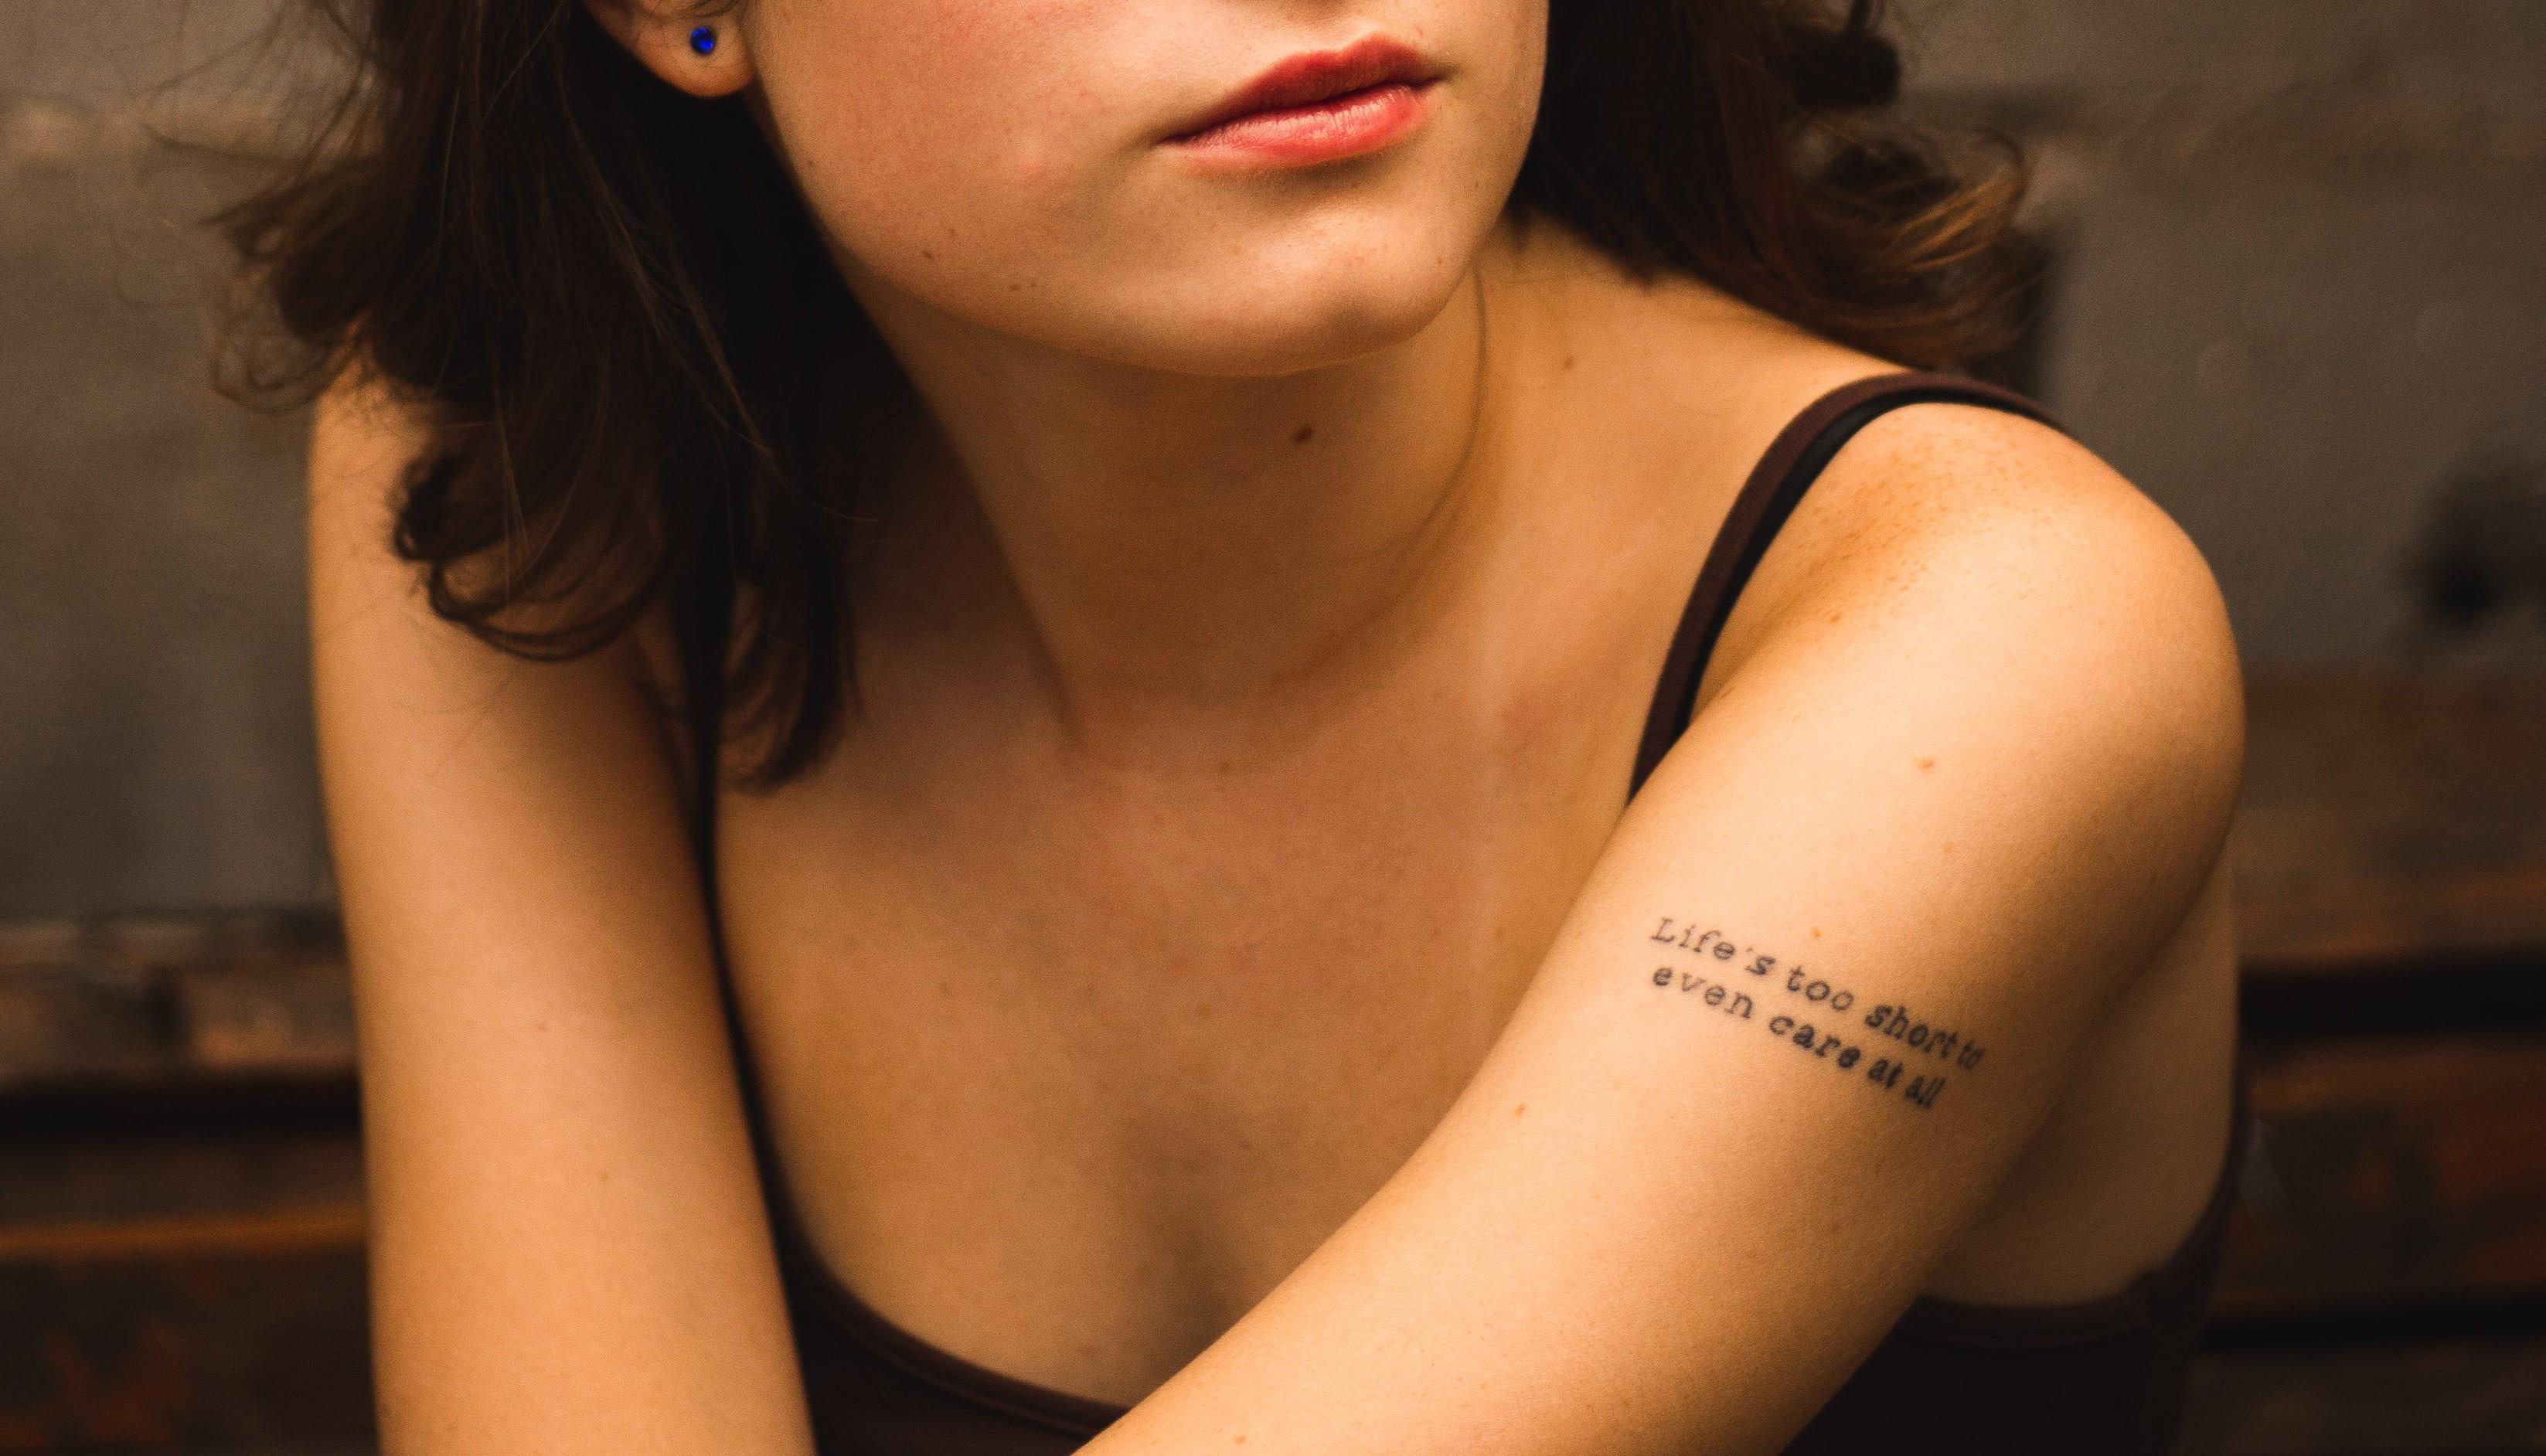 Donna con tatuaggio da braccio "Life is too short to even care"